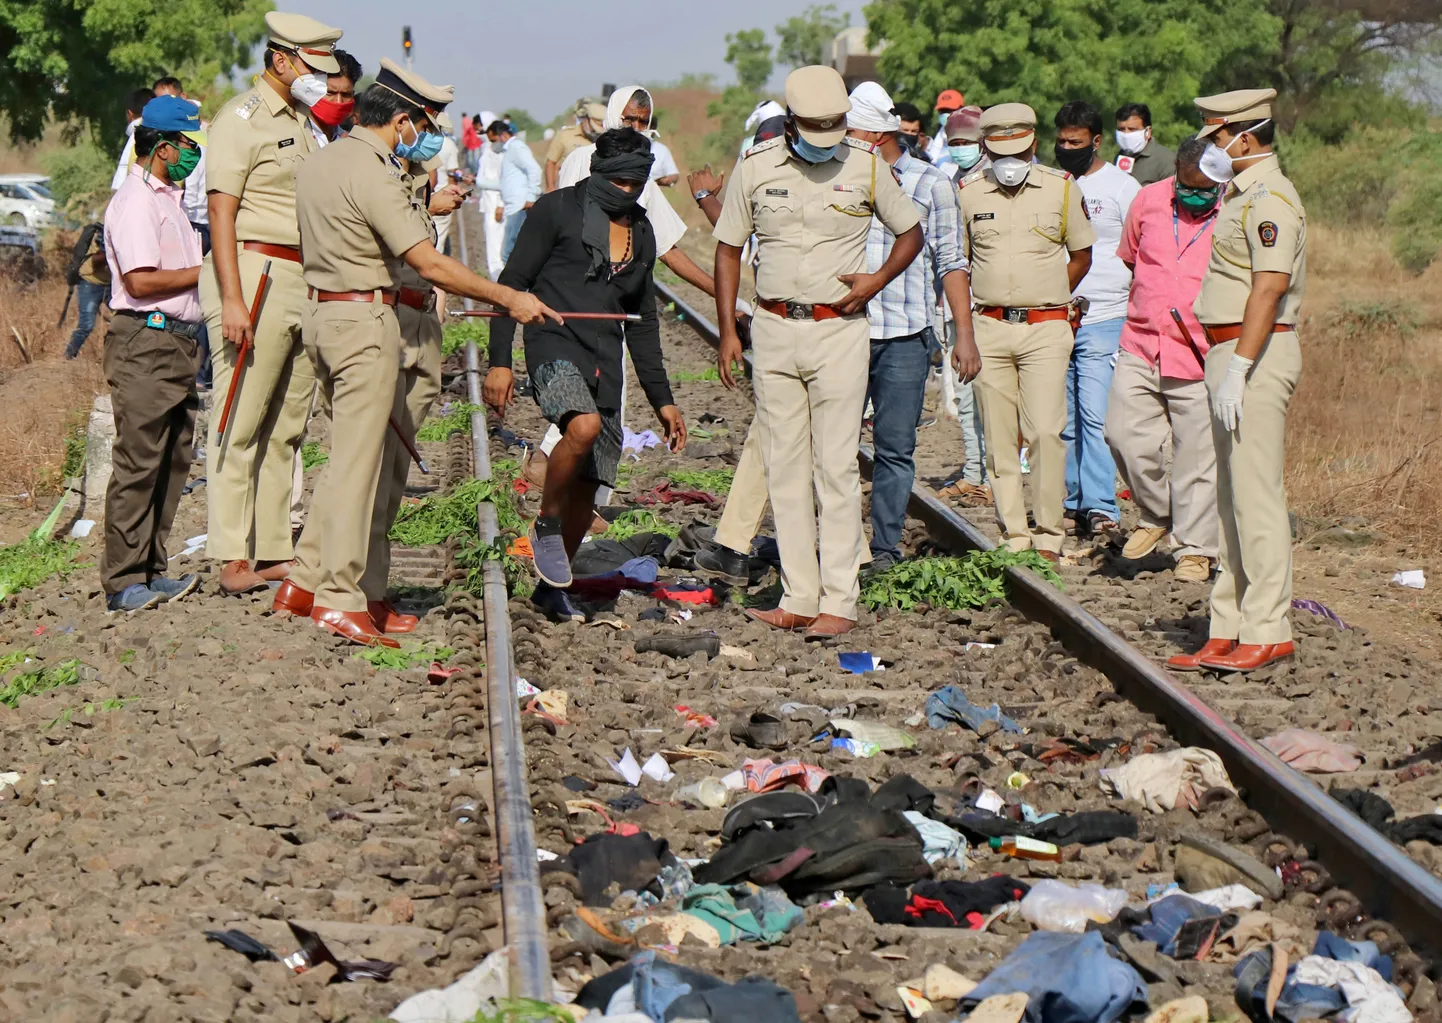 Indijā vilciens nobrauc 16 uz sliedēm gulošus cilvēkus. Attēls no notikuma vietas